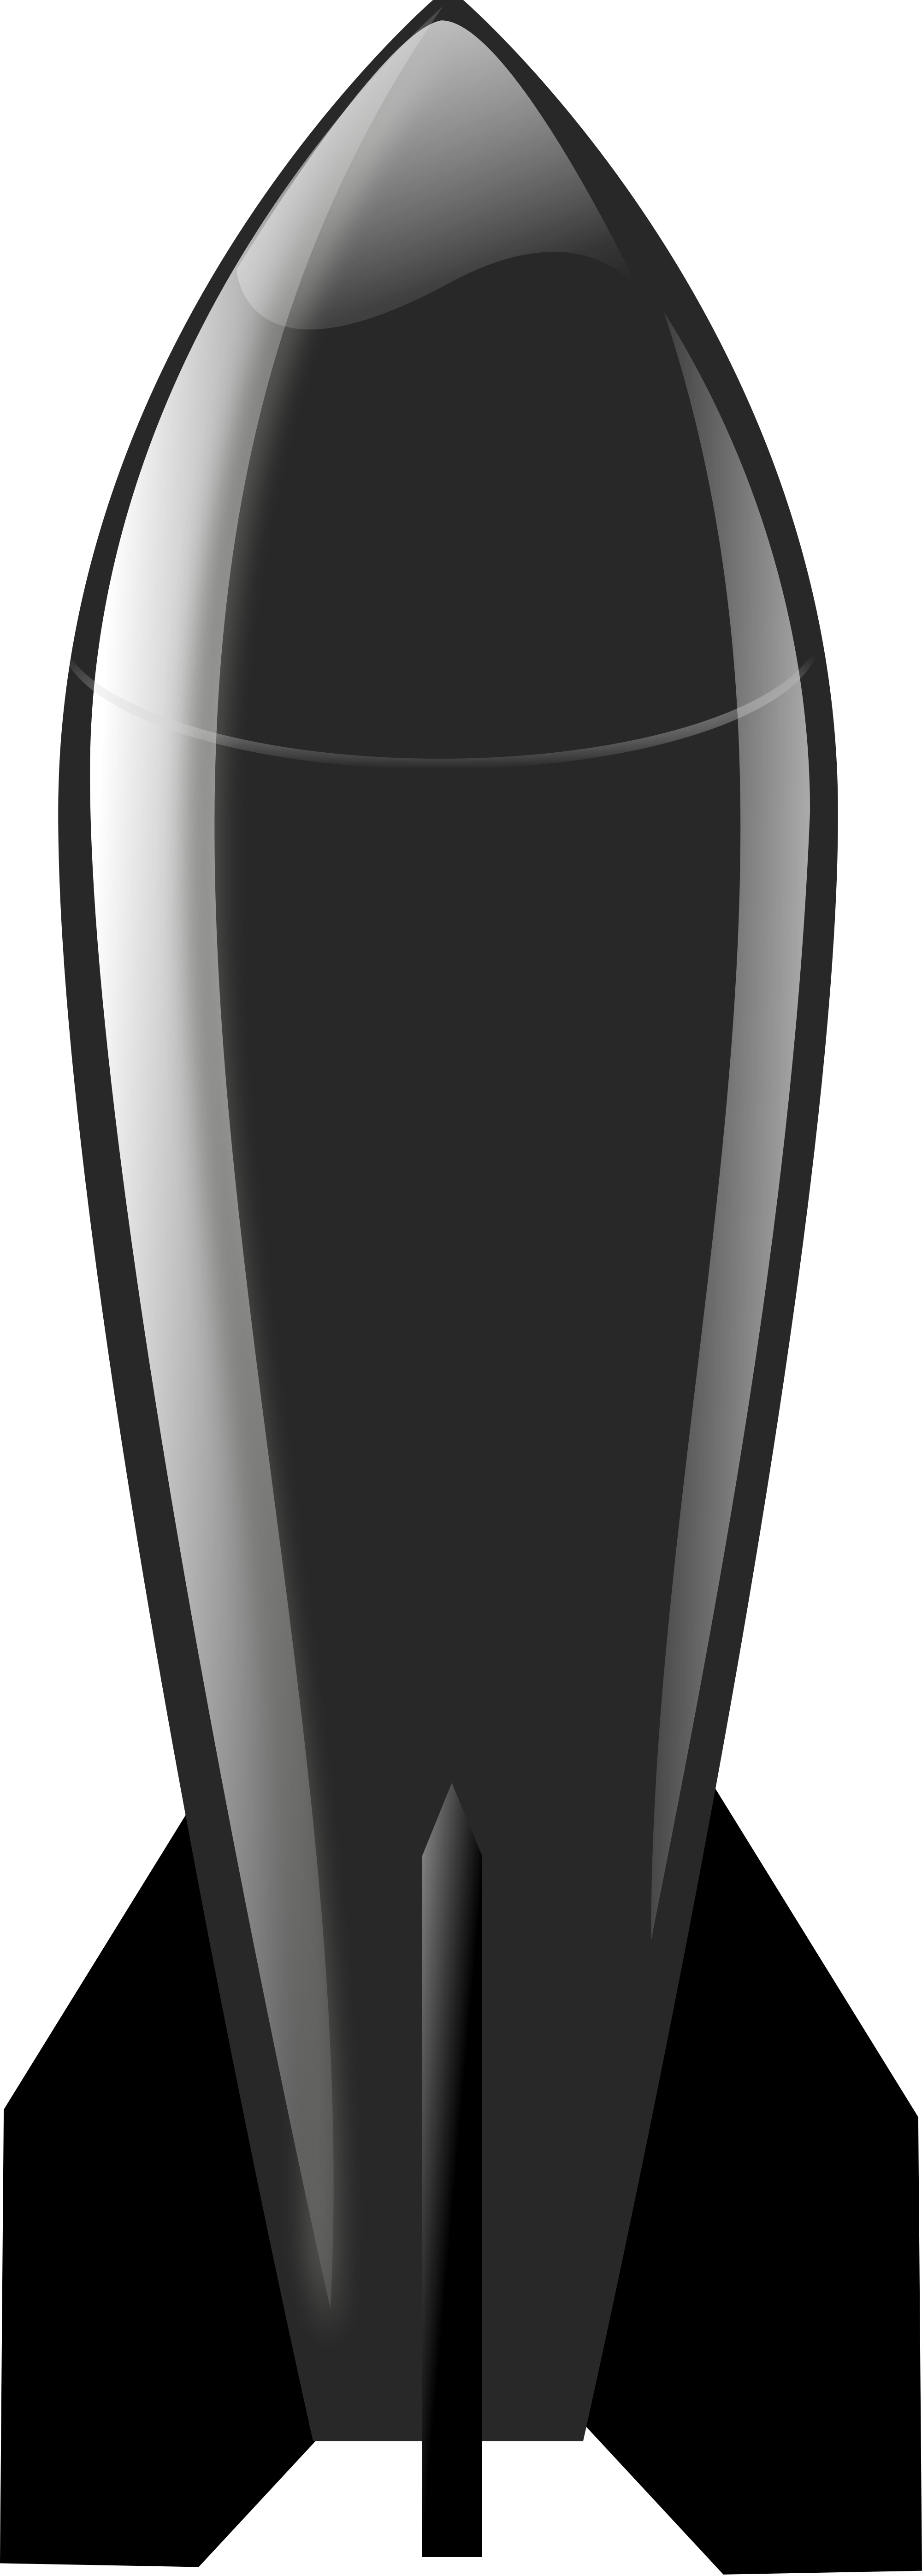 Bomb Svg - Bomb Clip Art (2000x5585)